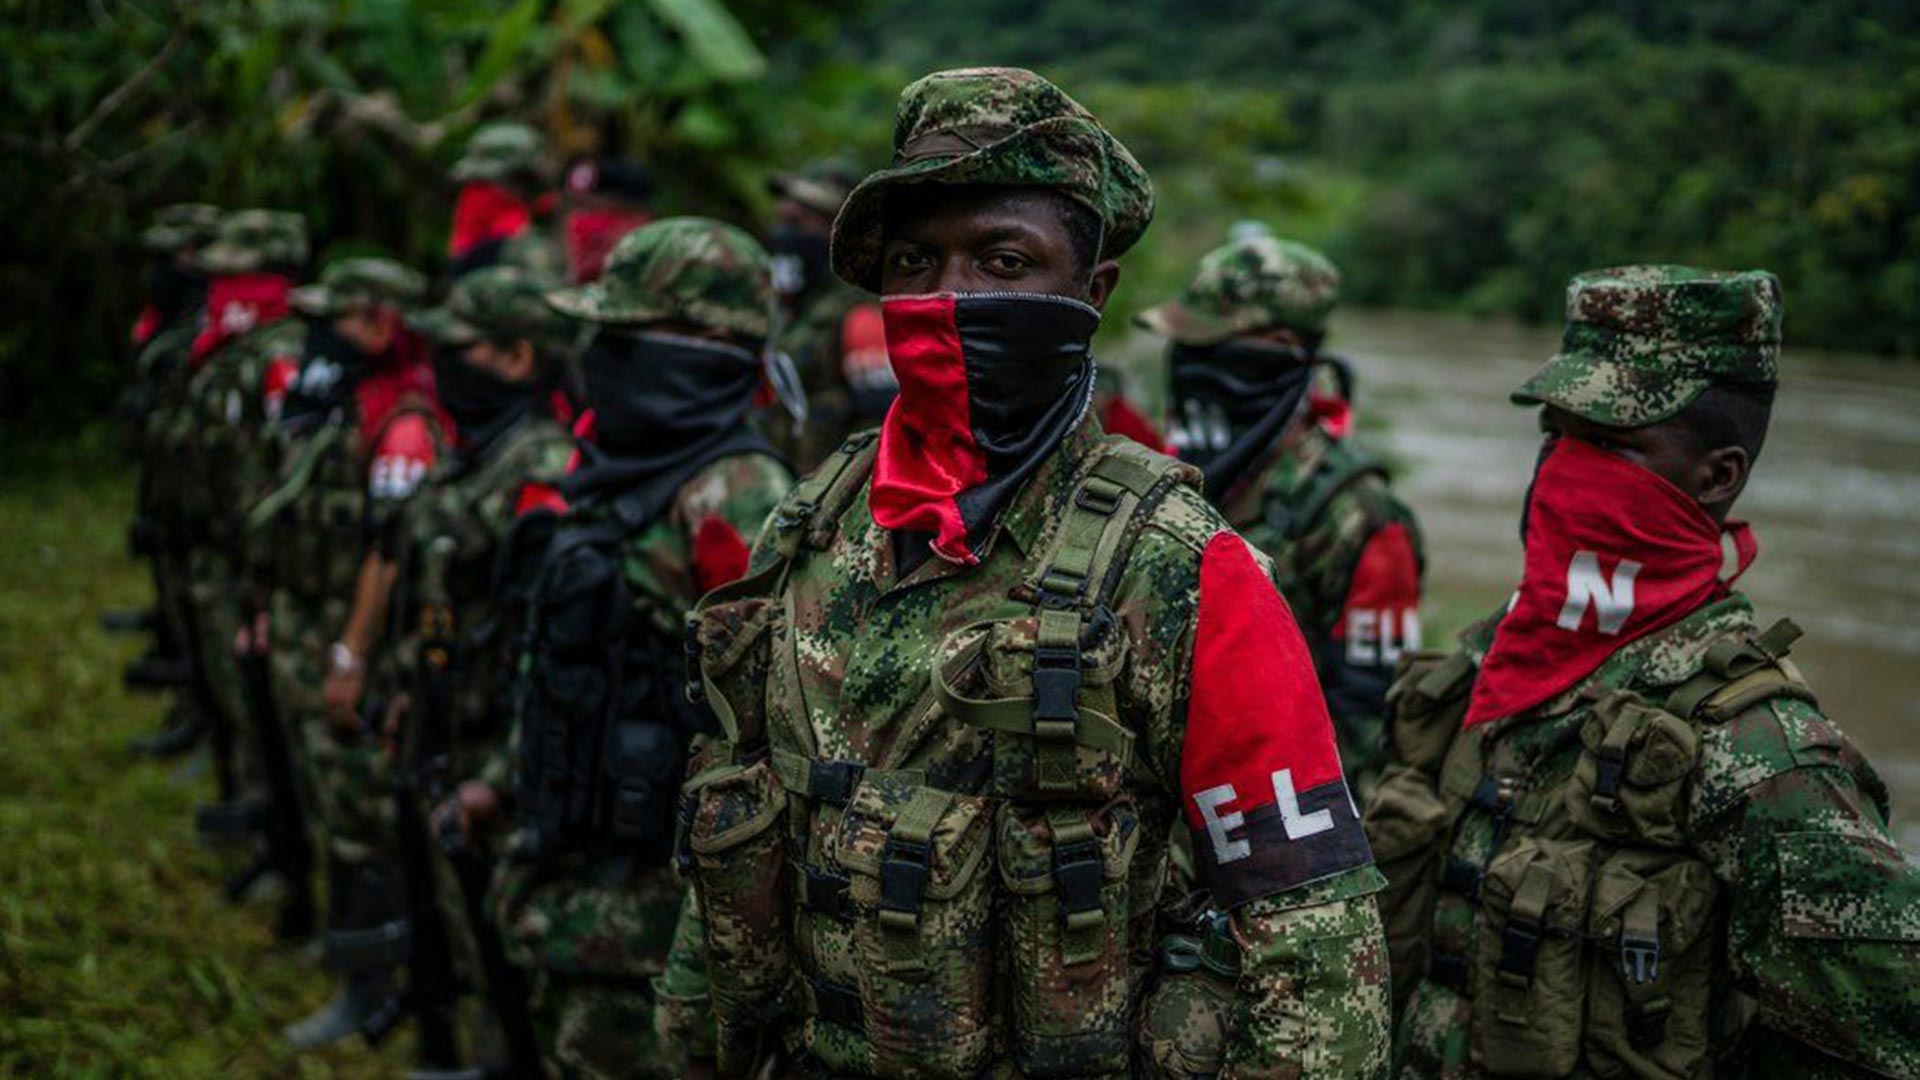 El grupo armado ELN (Ejército de Liberación Nacional)